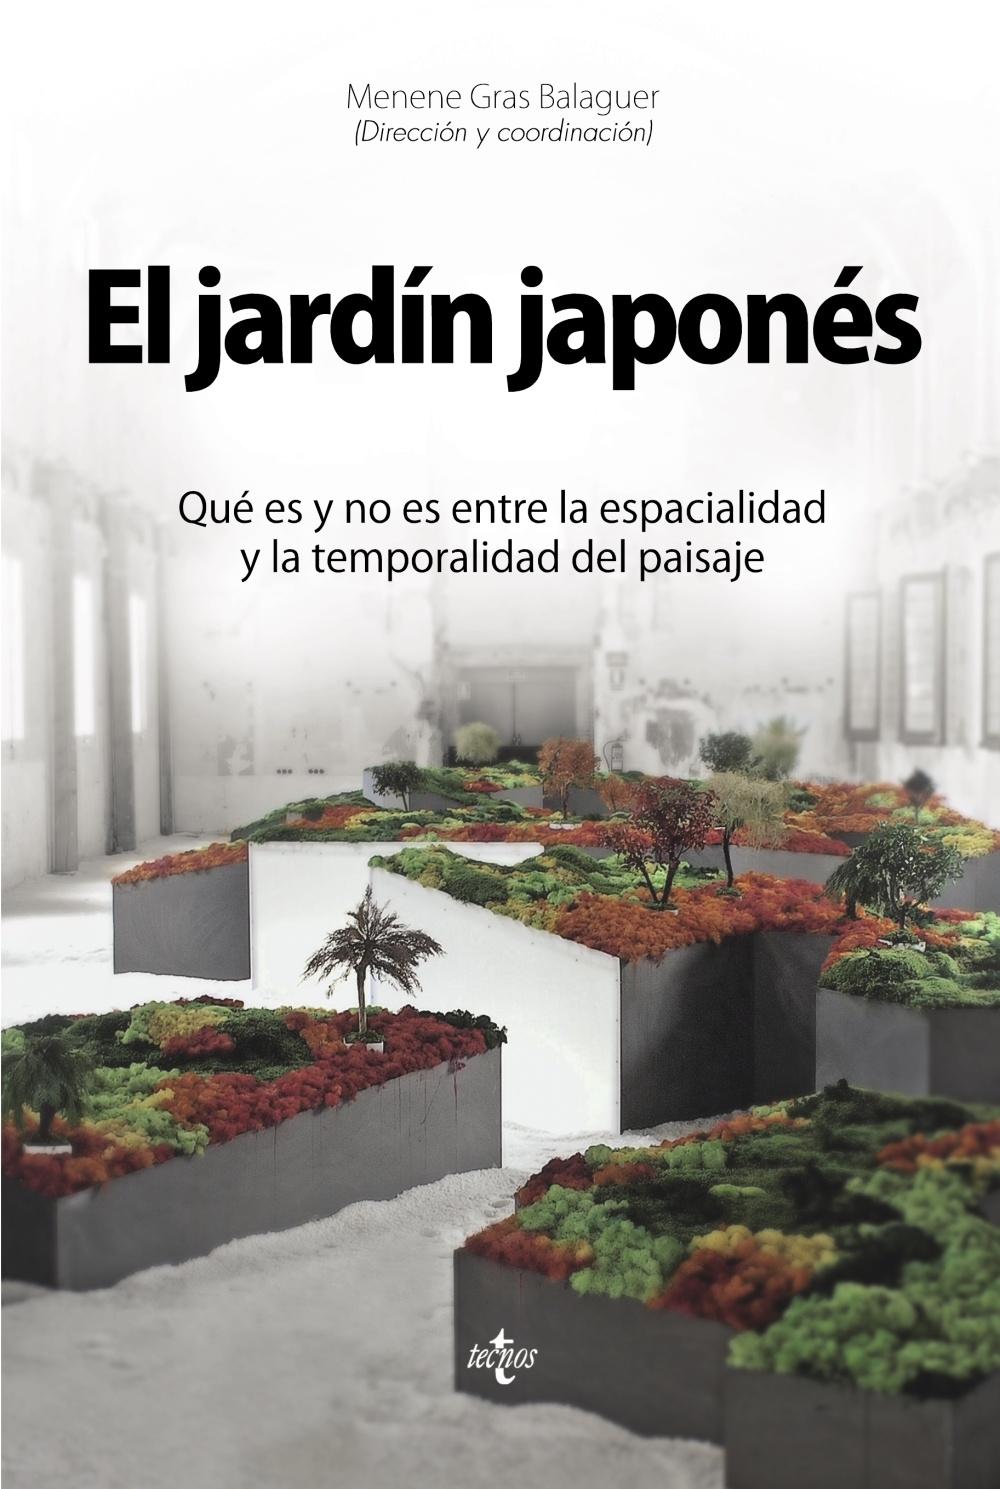 JARDIN JAPONES, EL "QUE ES Y QUE NO ES ENTRE LA ESPACIALIDAD Y LA TEMPORALIDAD DEL PAISAJE". 